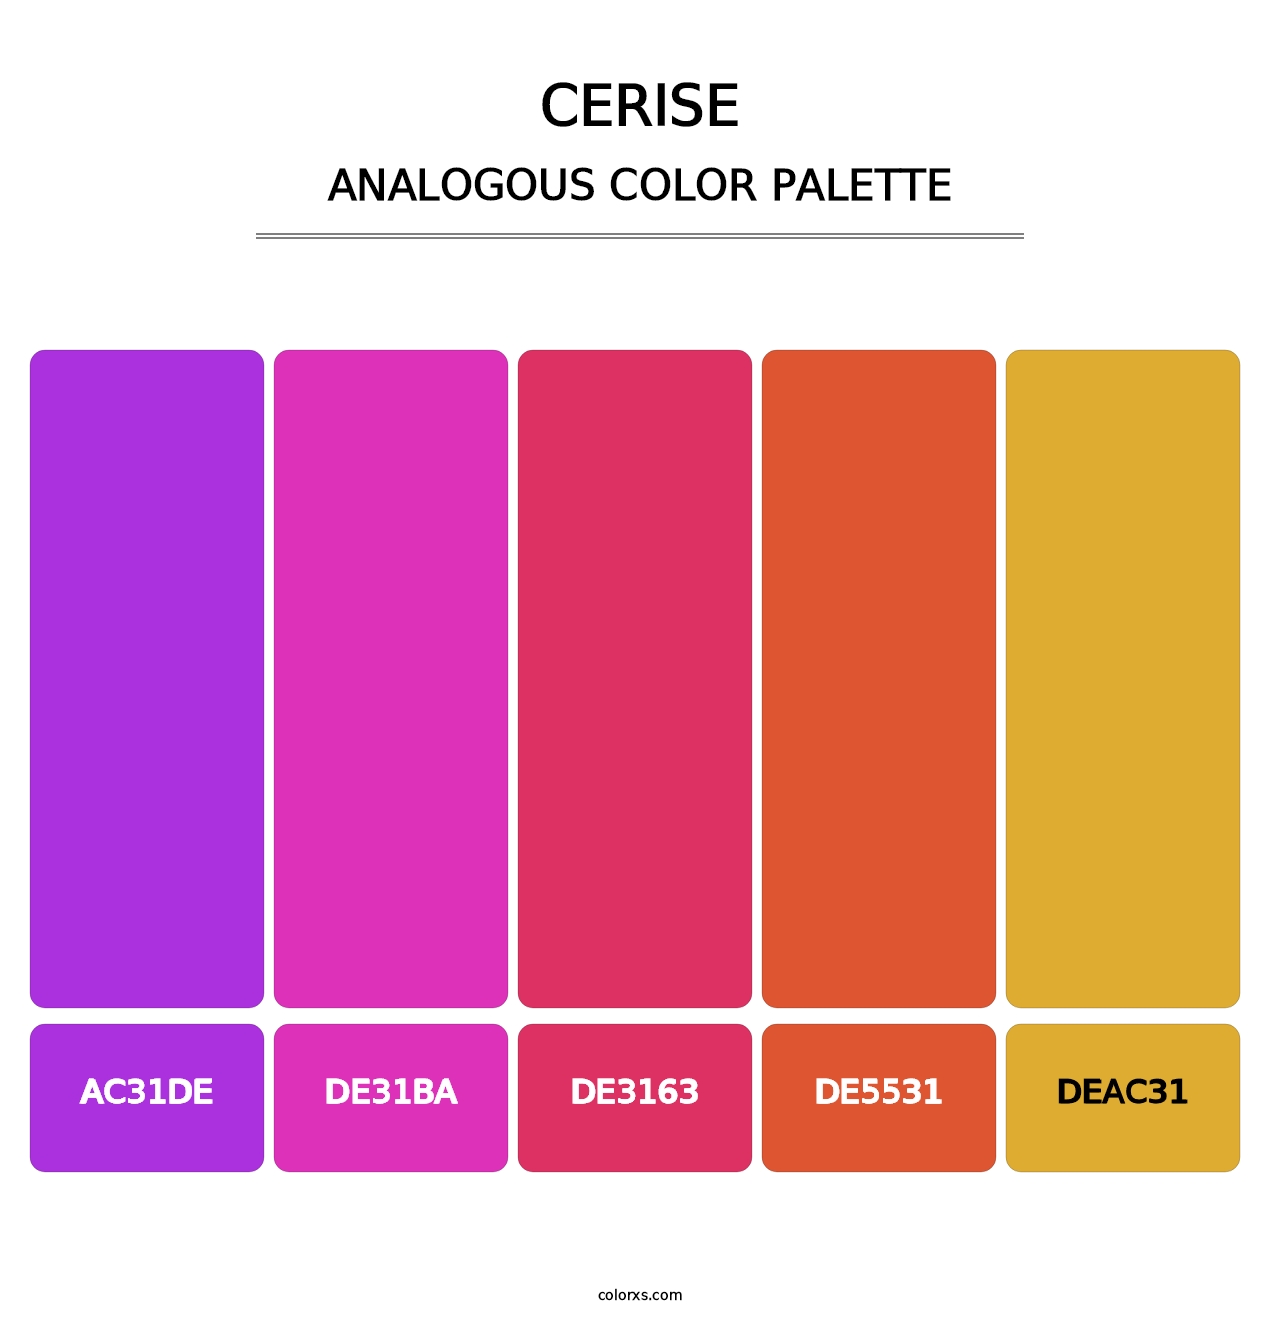 Cerise - Analogous Color Palette